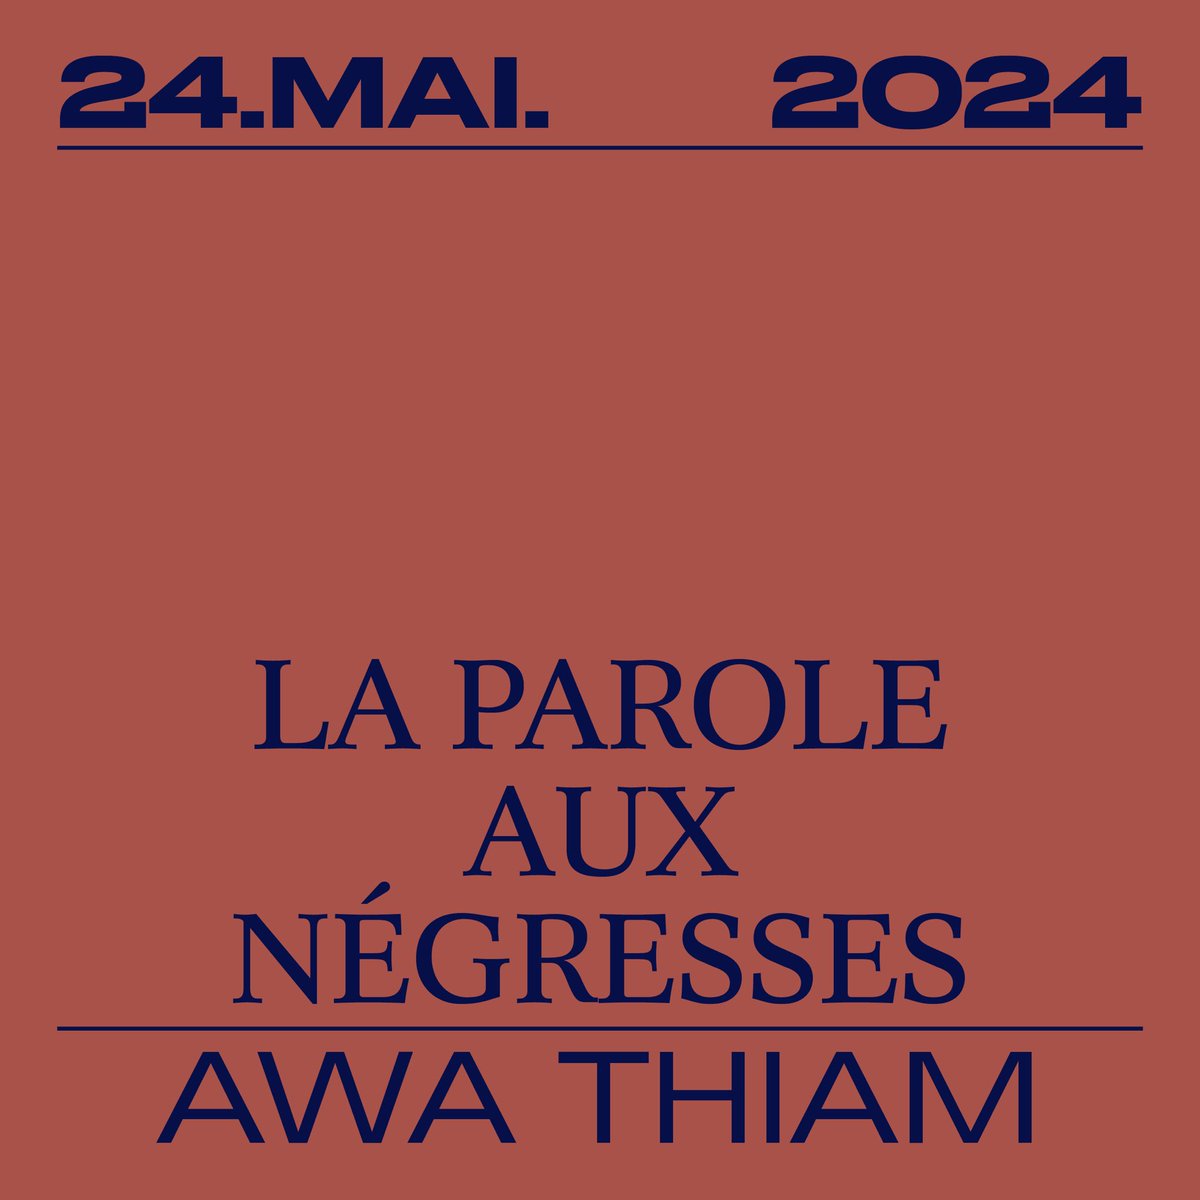 🔜 Le 24 mai paraîtra « La parole aux négresses », un livre fondateur du féminisme noir francophone par l’anthropologue Awa Thiam, préfacé par Mame-Fatou Niang et co-édité par Aby Gaye.